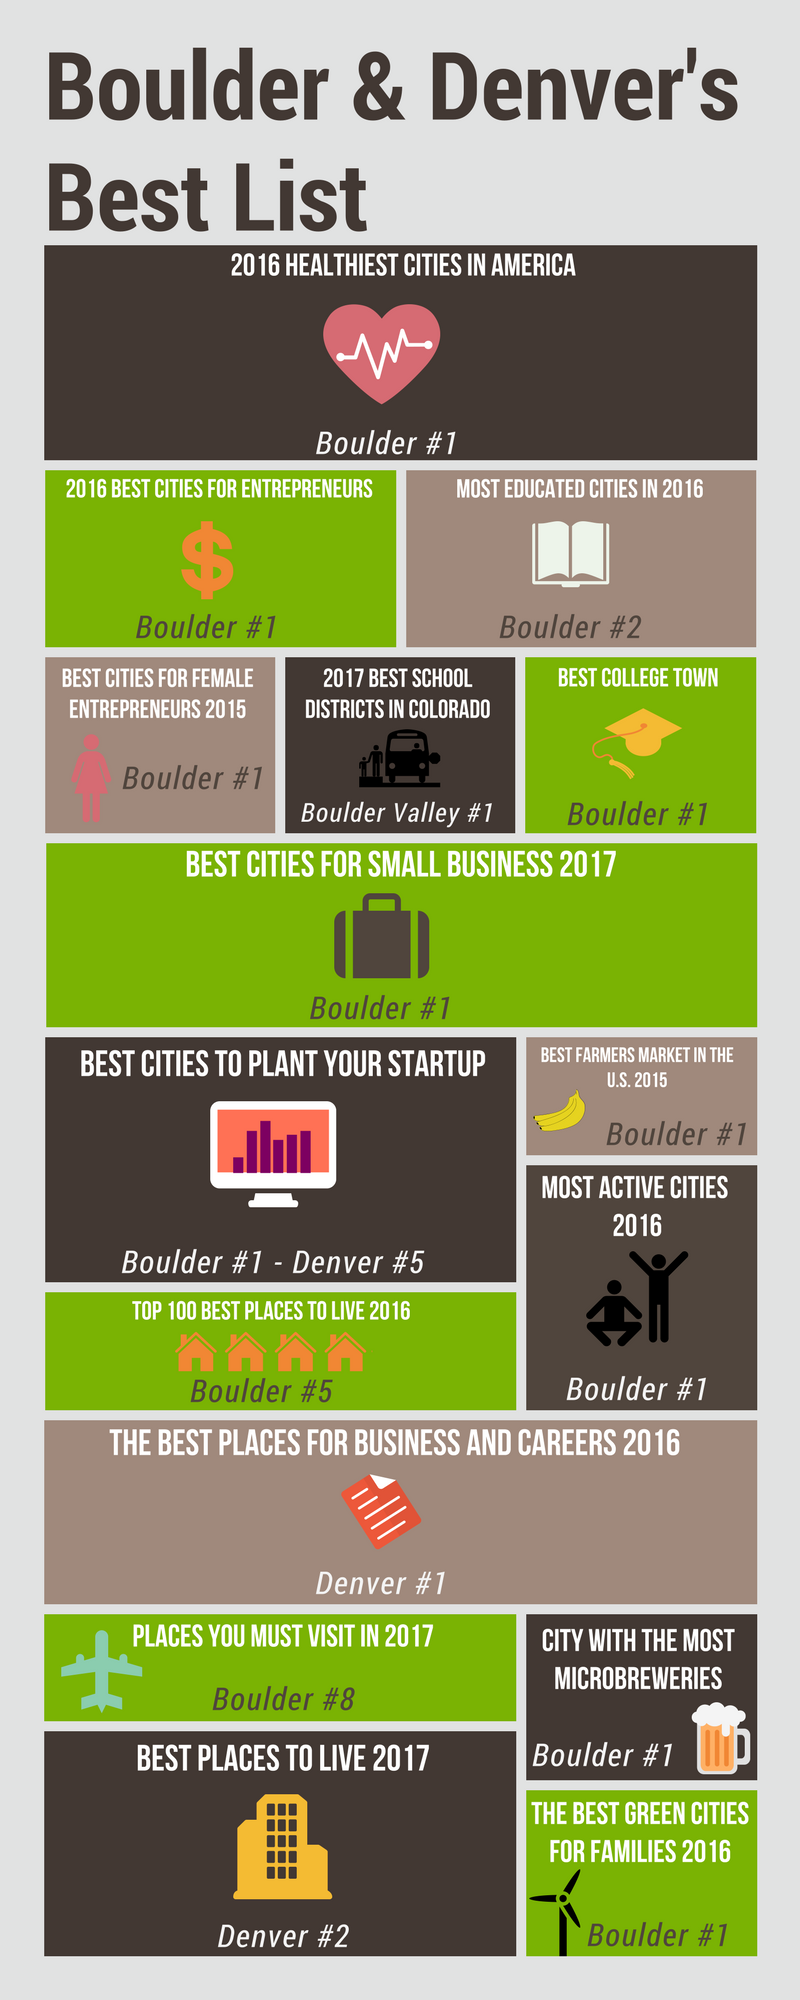 Boulder & Denver's Best List